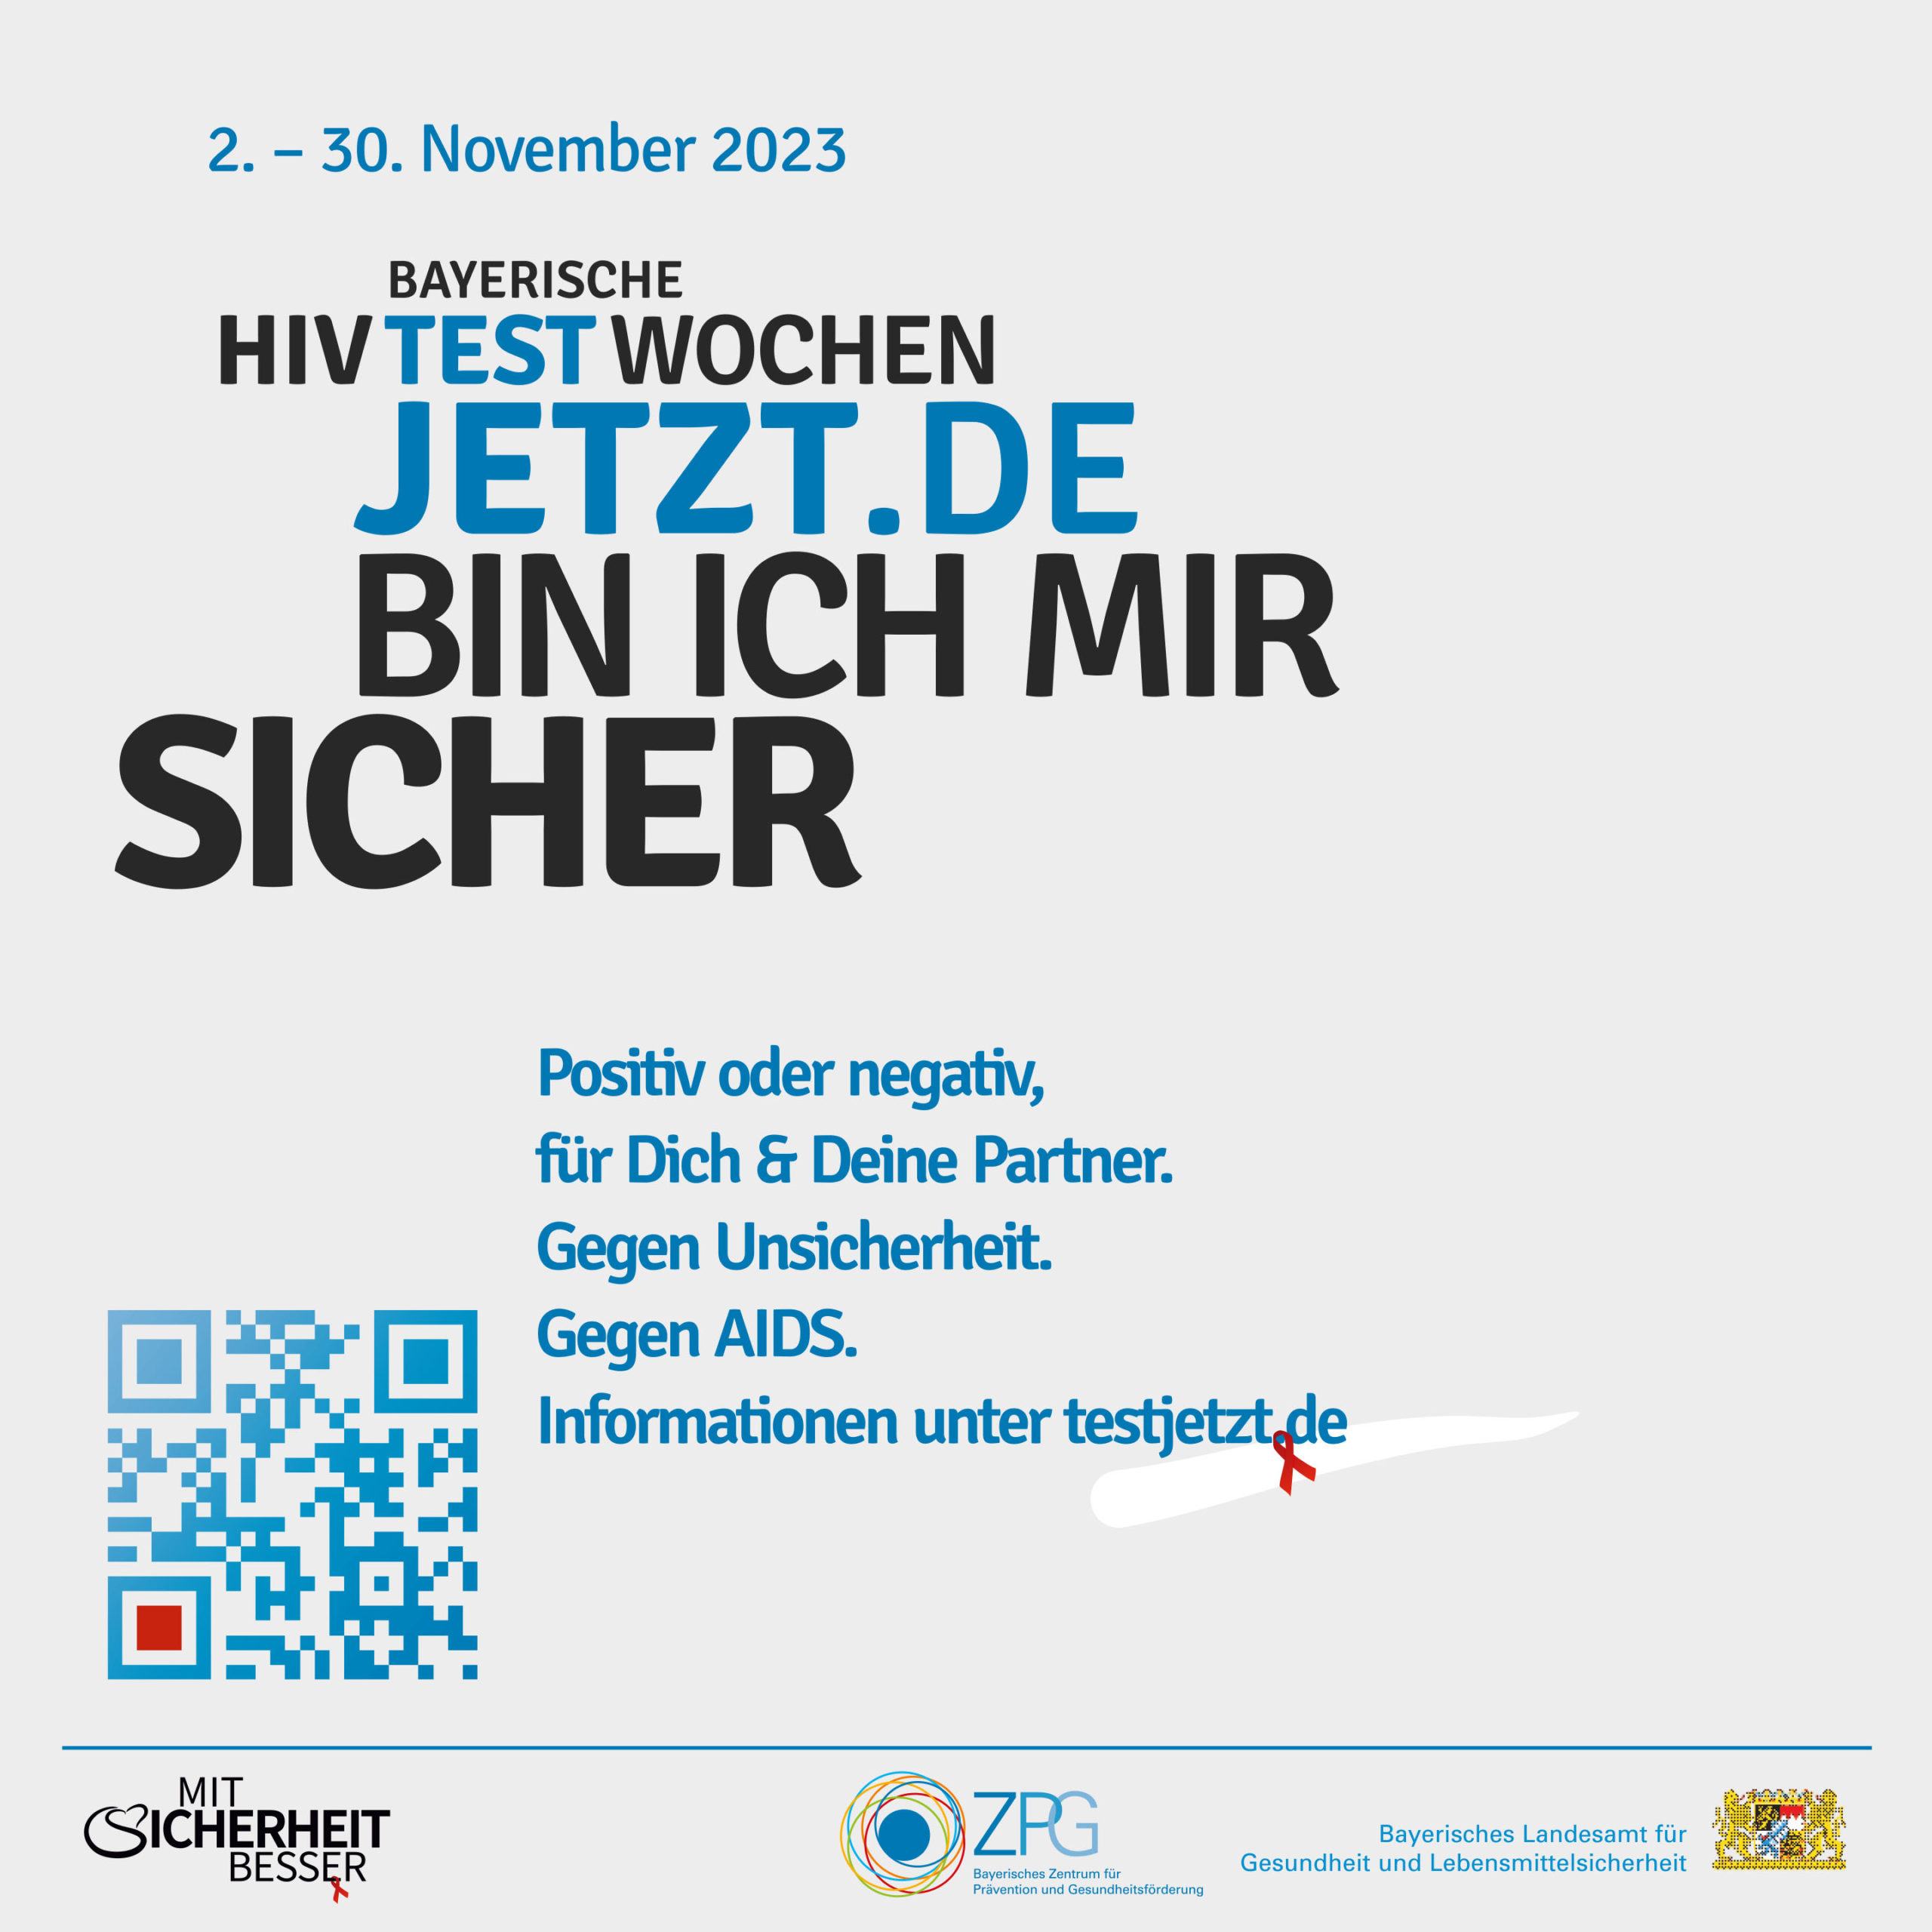 HIV Testwochen 11/2023 - Gesundheitsamt Amberg lädt ein